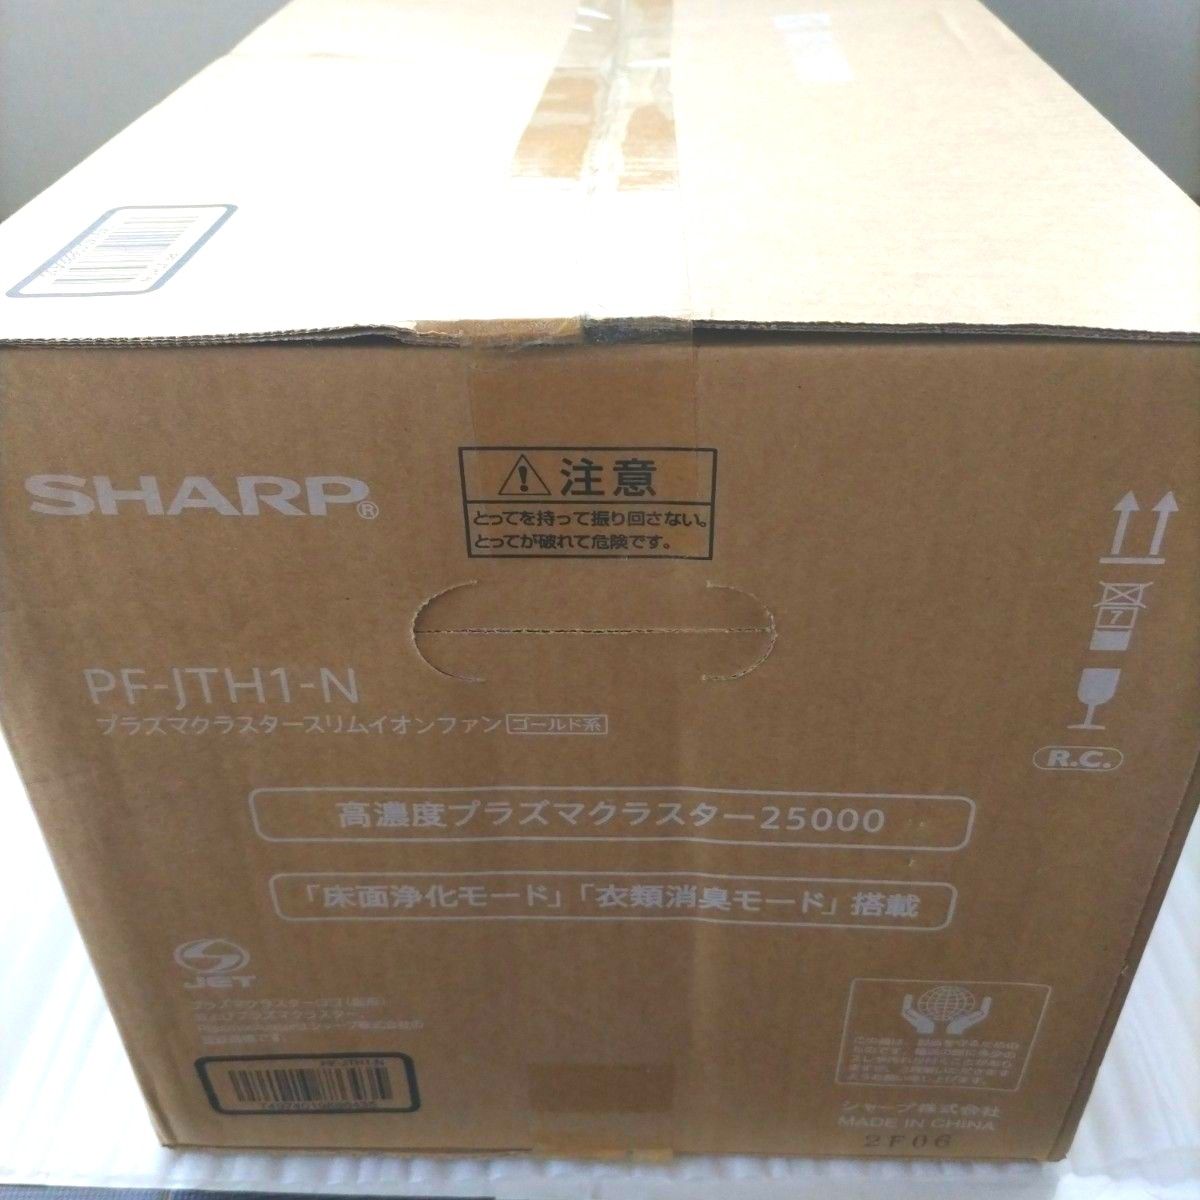 【新品(未開封)】SHARP PF-JTH1-N GOLD　スリムイオンファン　ピンクゴールド